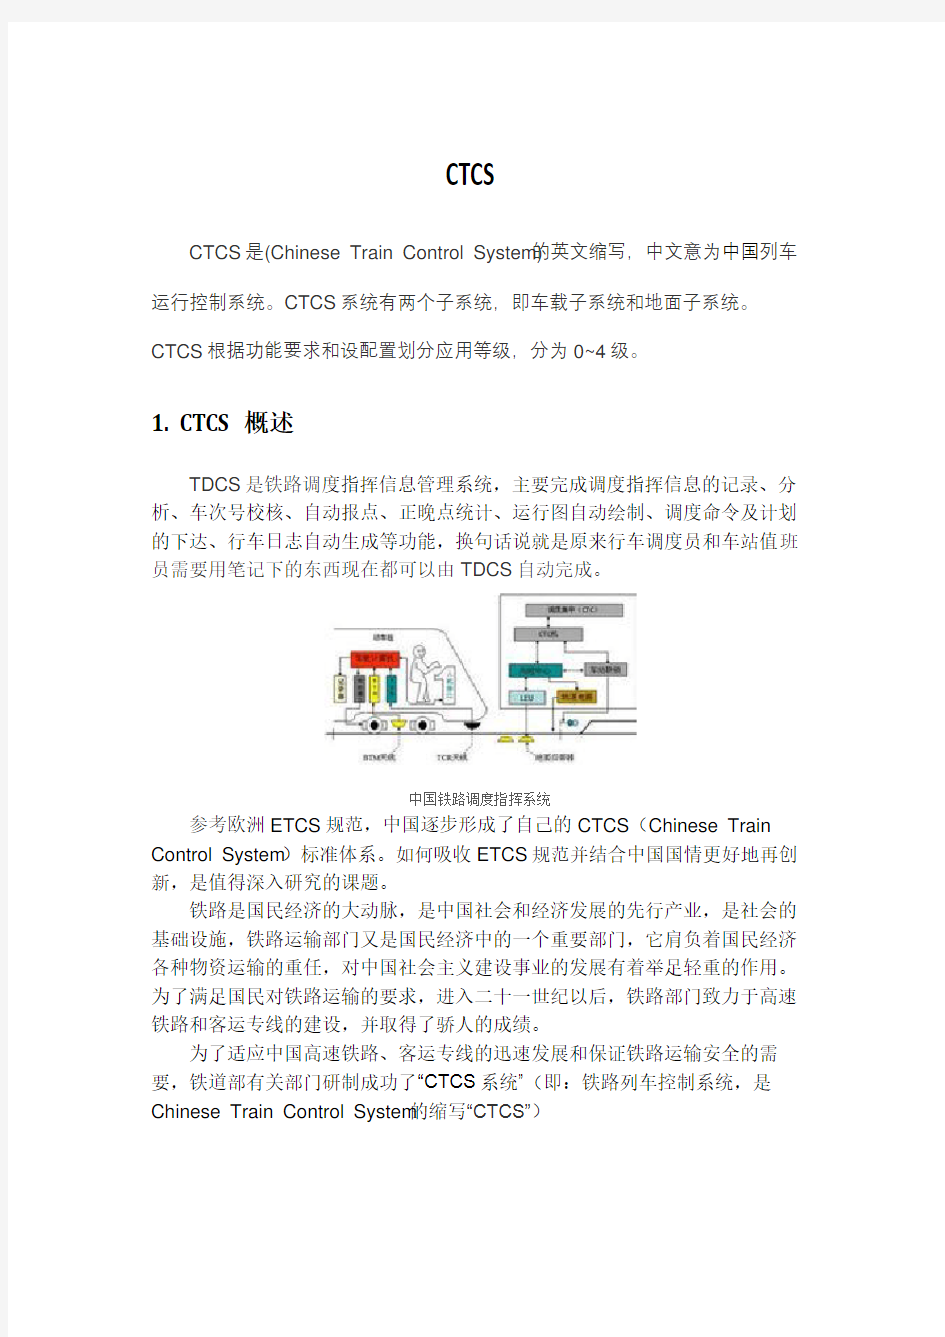 中国列车运行控制系统(CTCS)演示教学